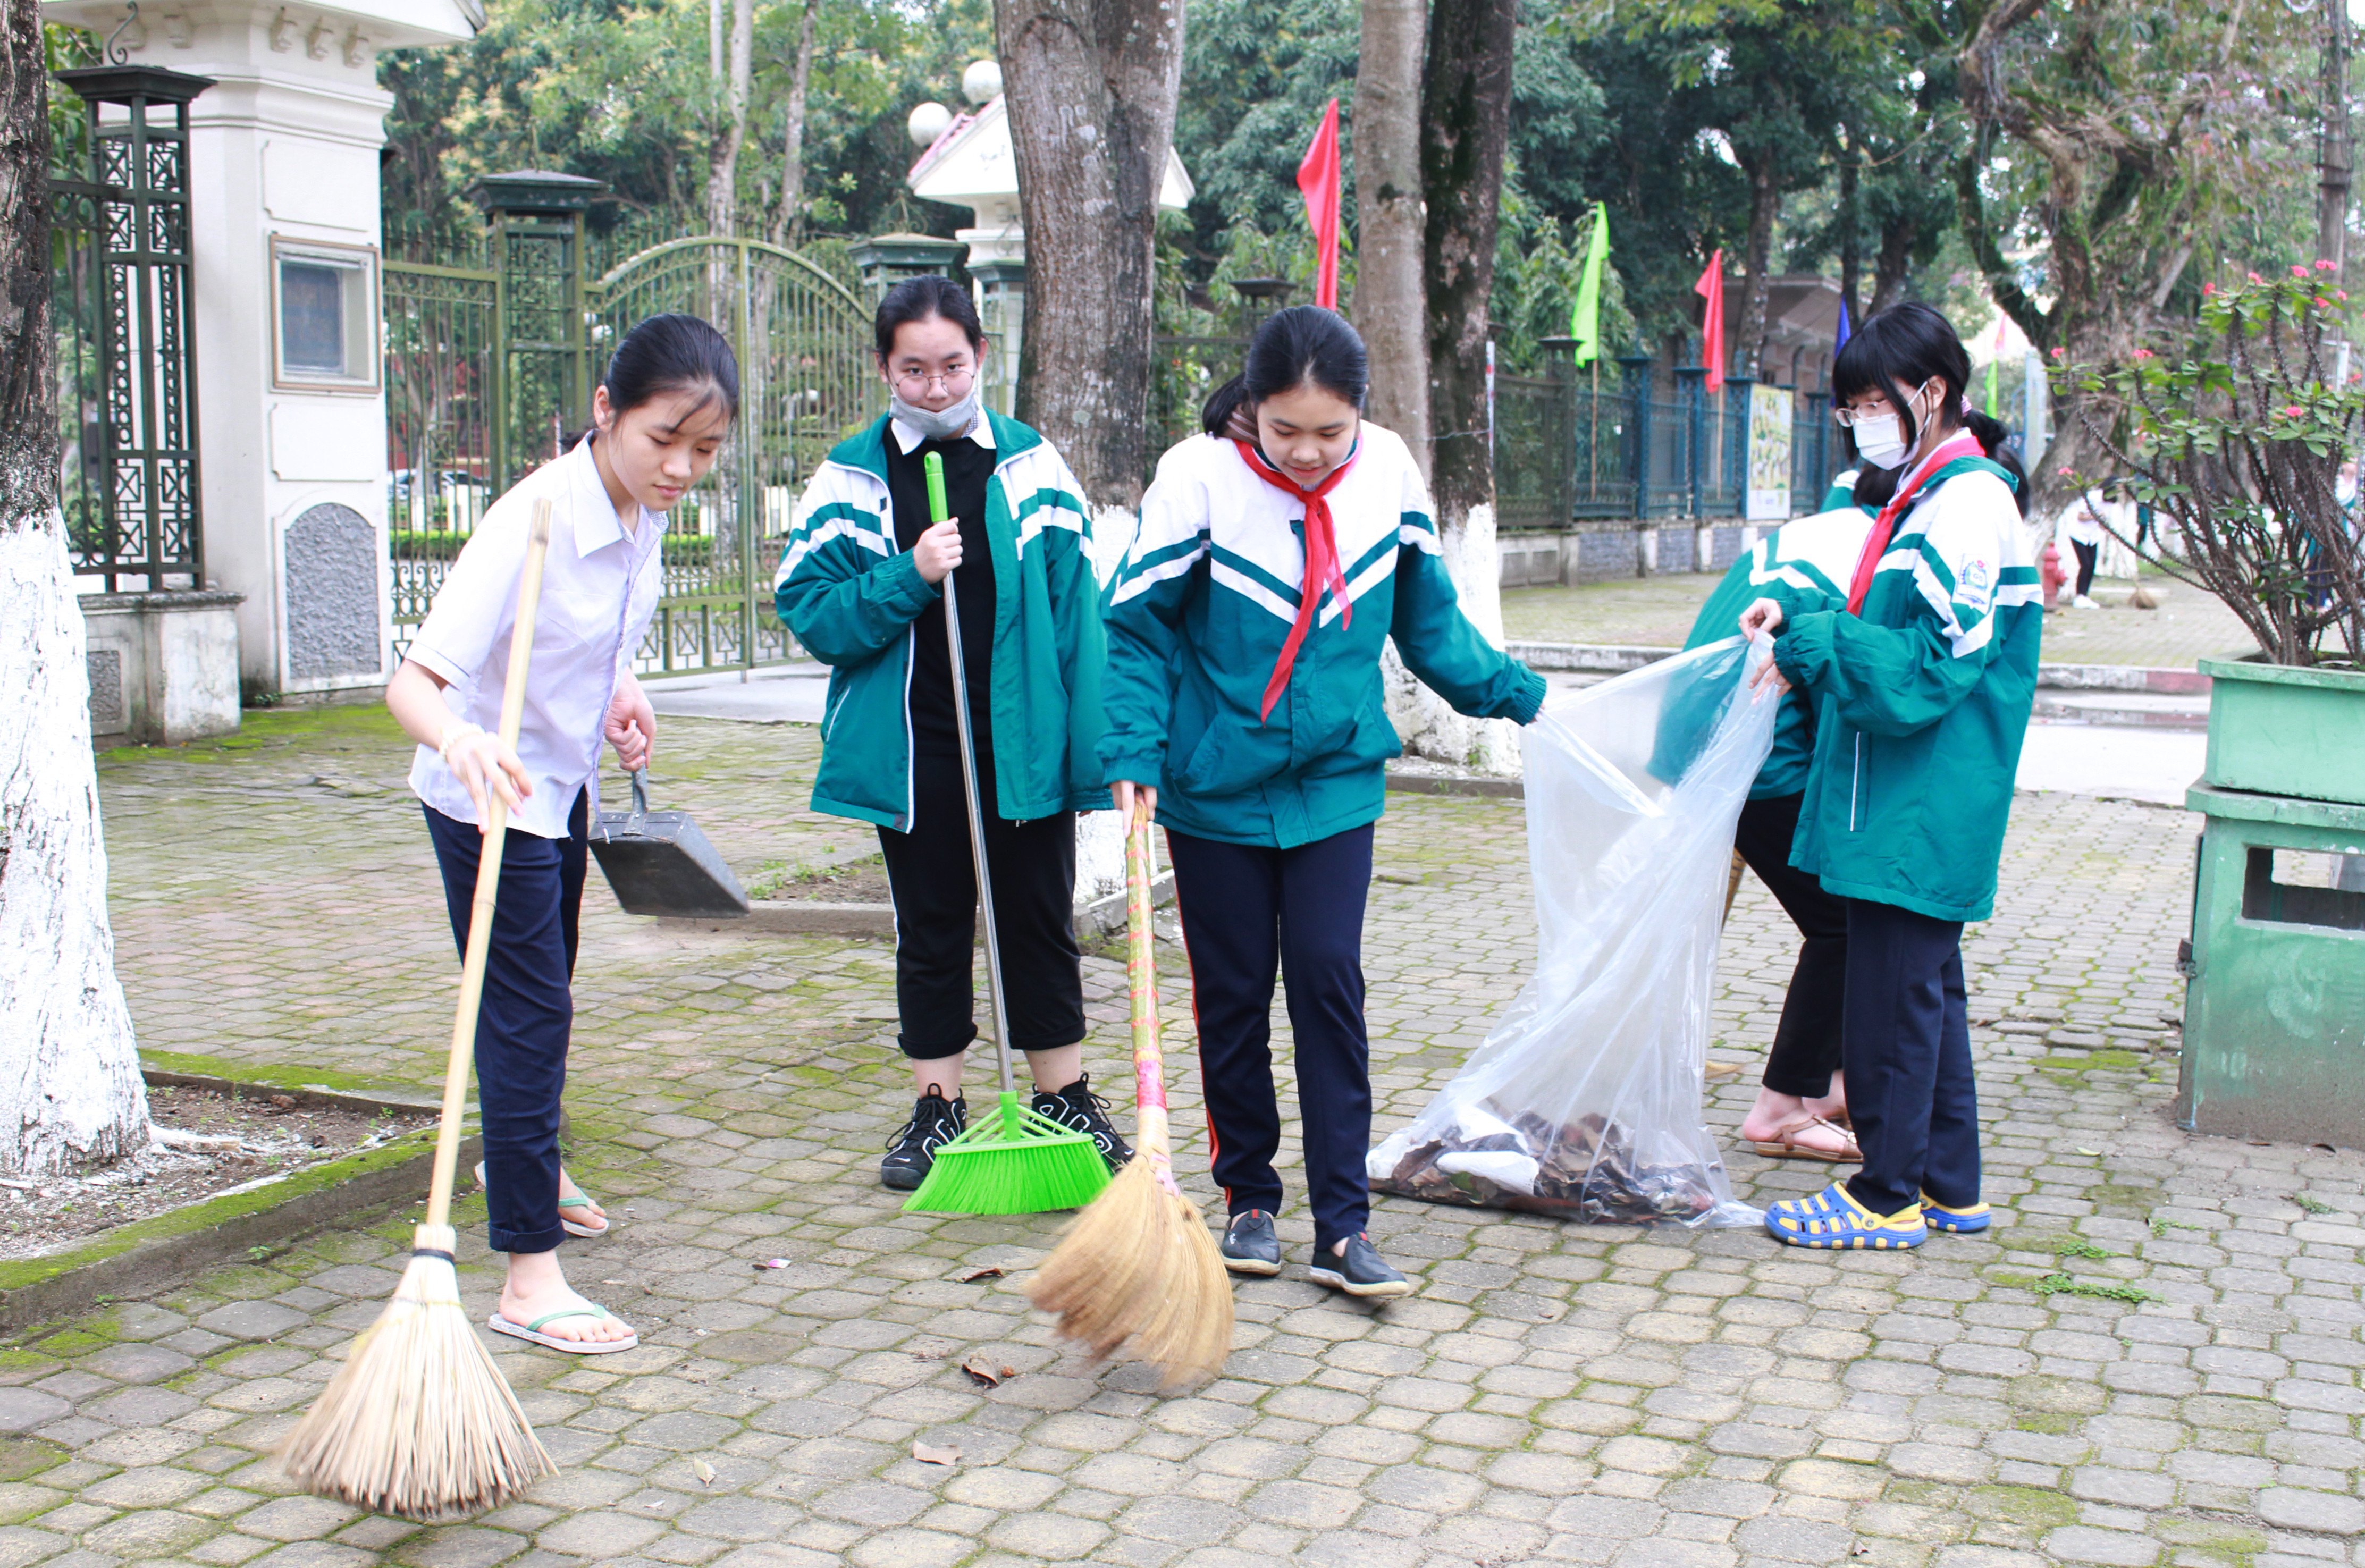 Hoạt động ra quân vệ sinh môi trường sau hội nghị của các đoàn viên, thanh niên trên địa bàn thành phố Vinh. Ảnh: Phương Thúy